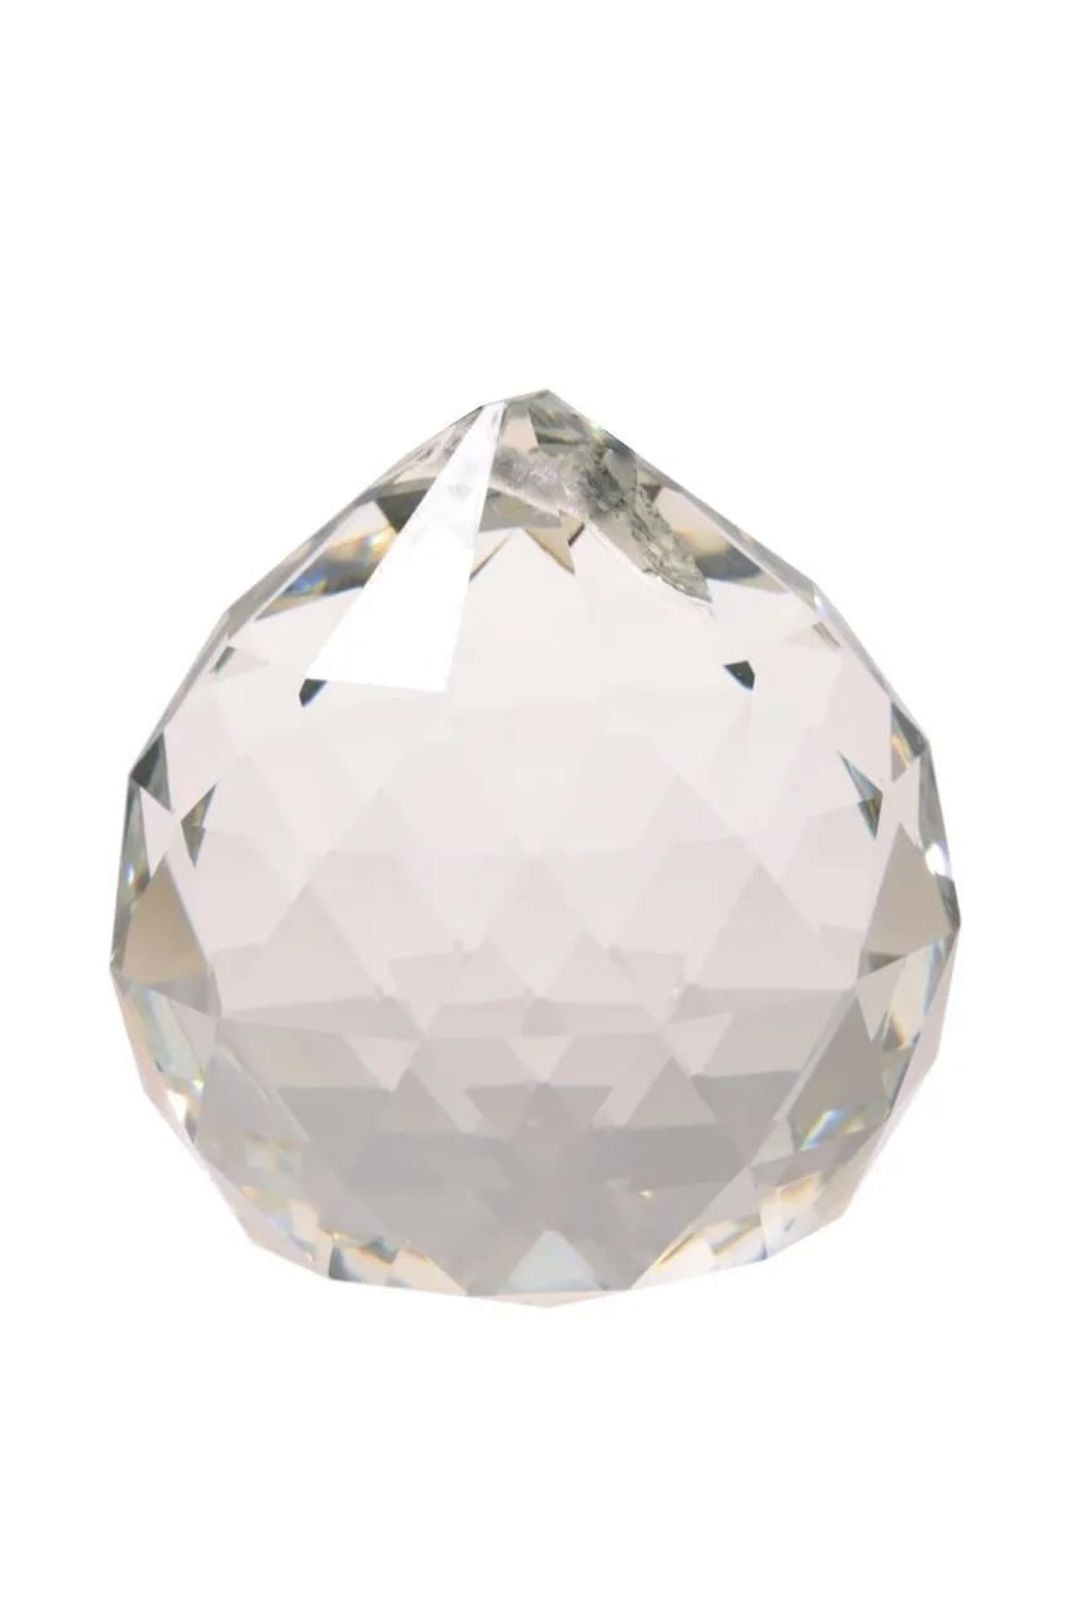 Cristal arc en ciel Sphère- 2cm